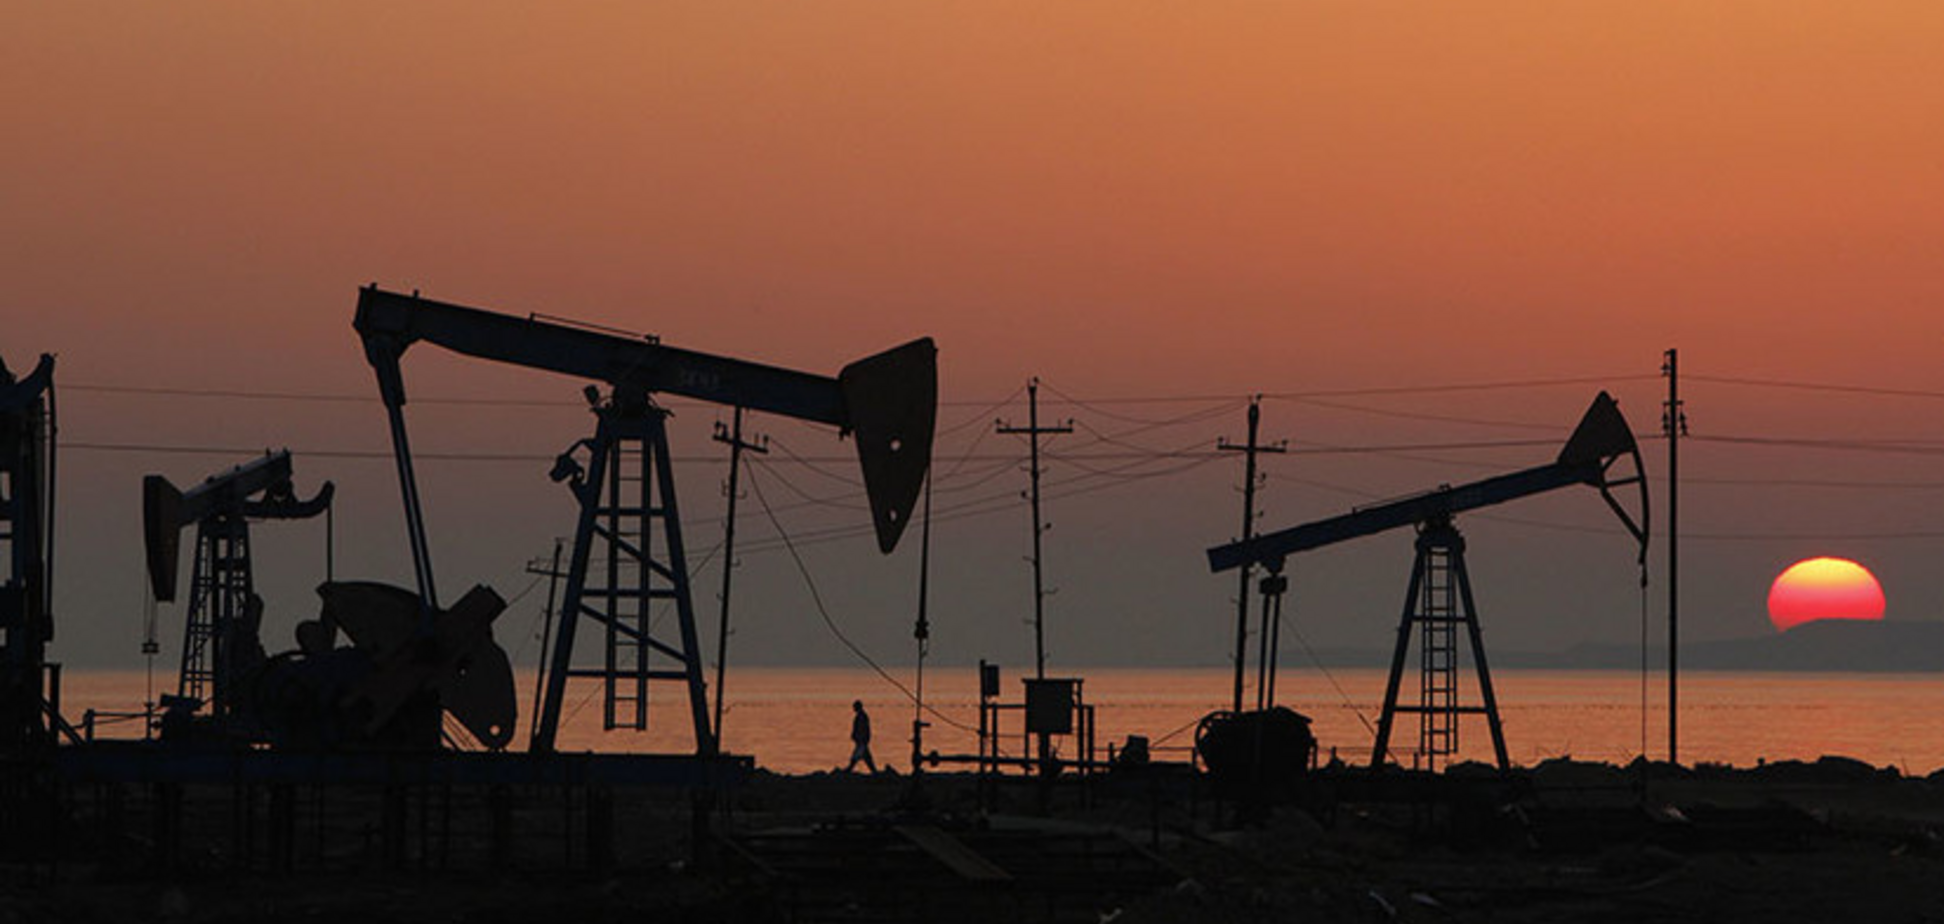 Саудовская Аравия установила собственные нормы добычи нефти вопреки ОПЕК+